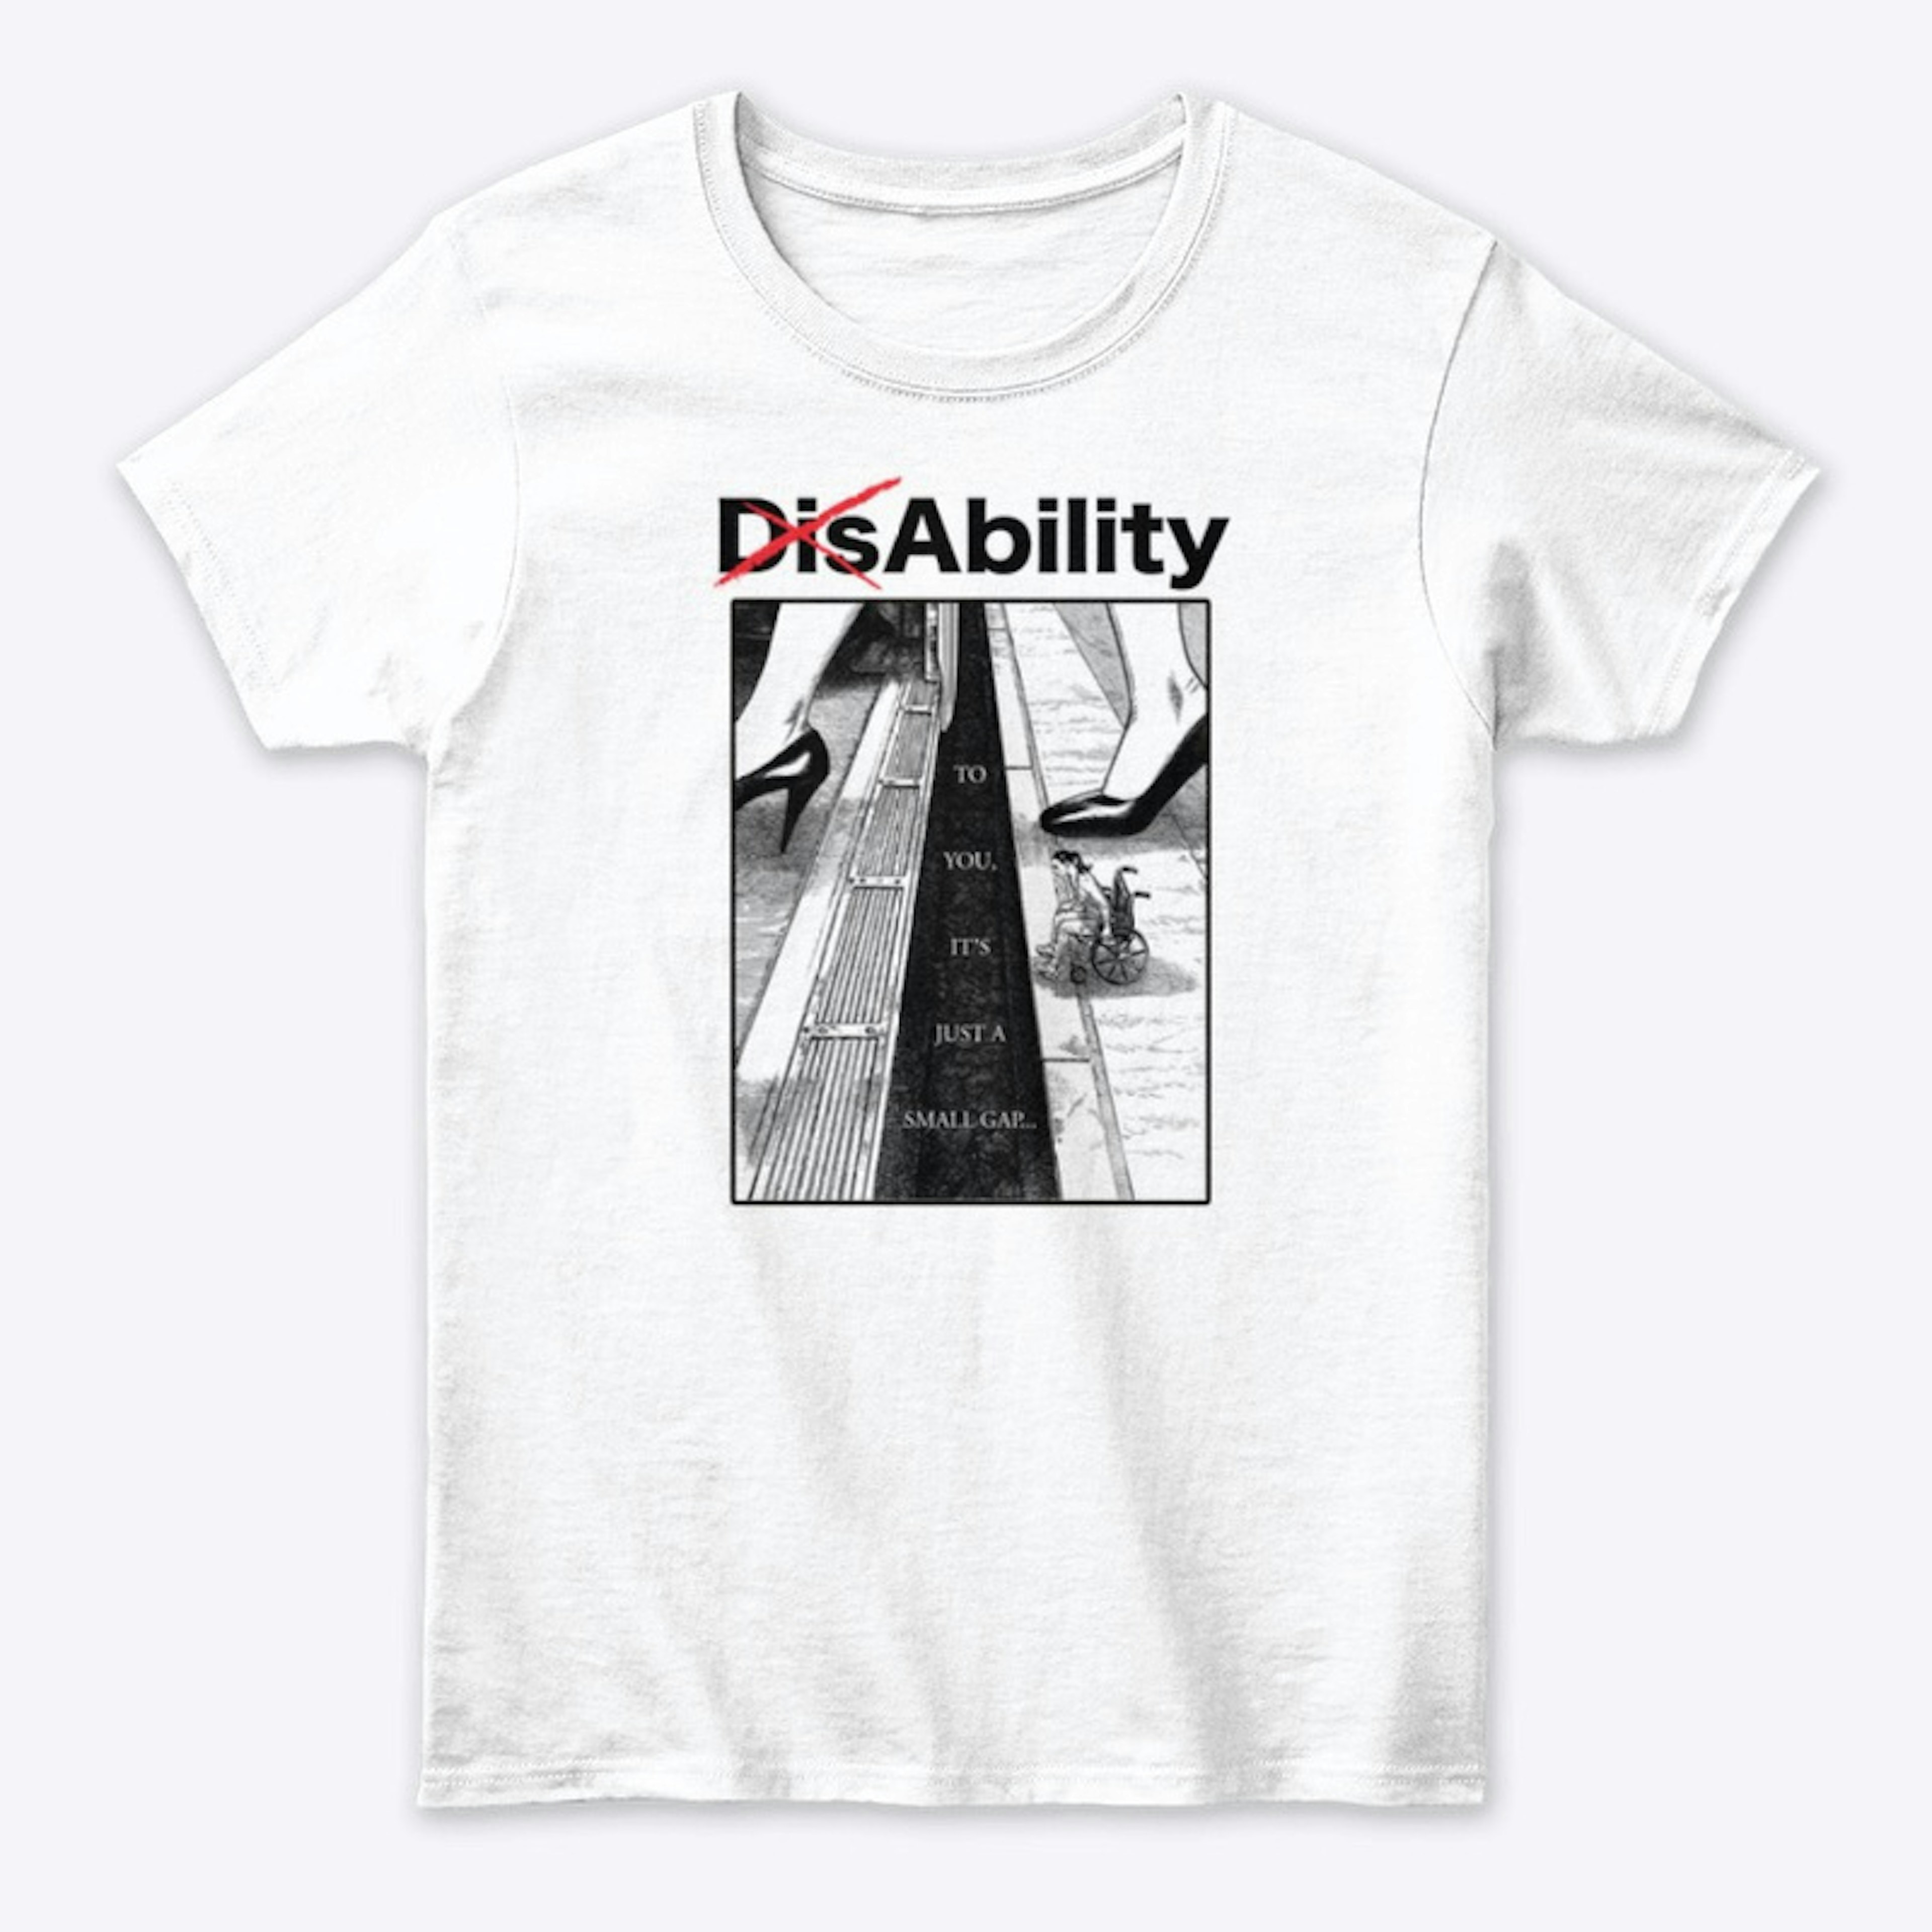 Dis-Ability